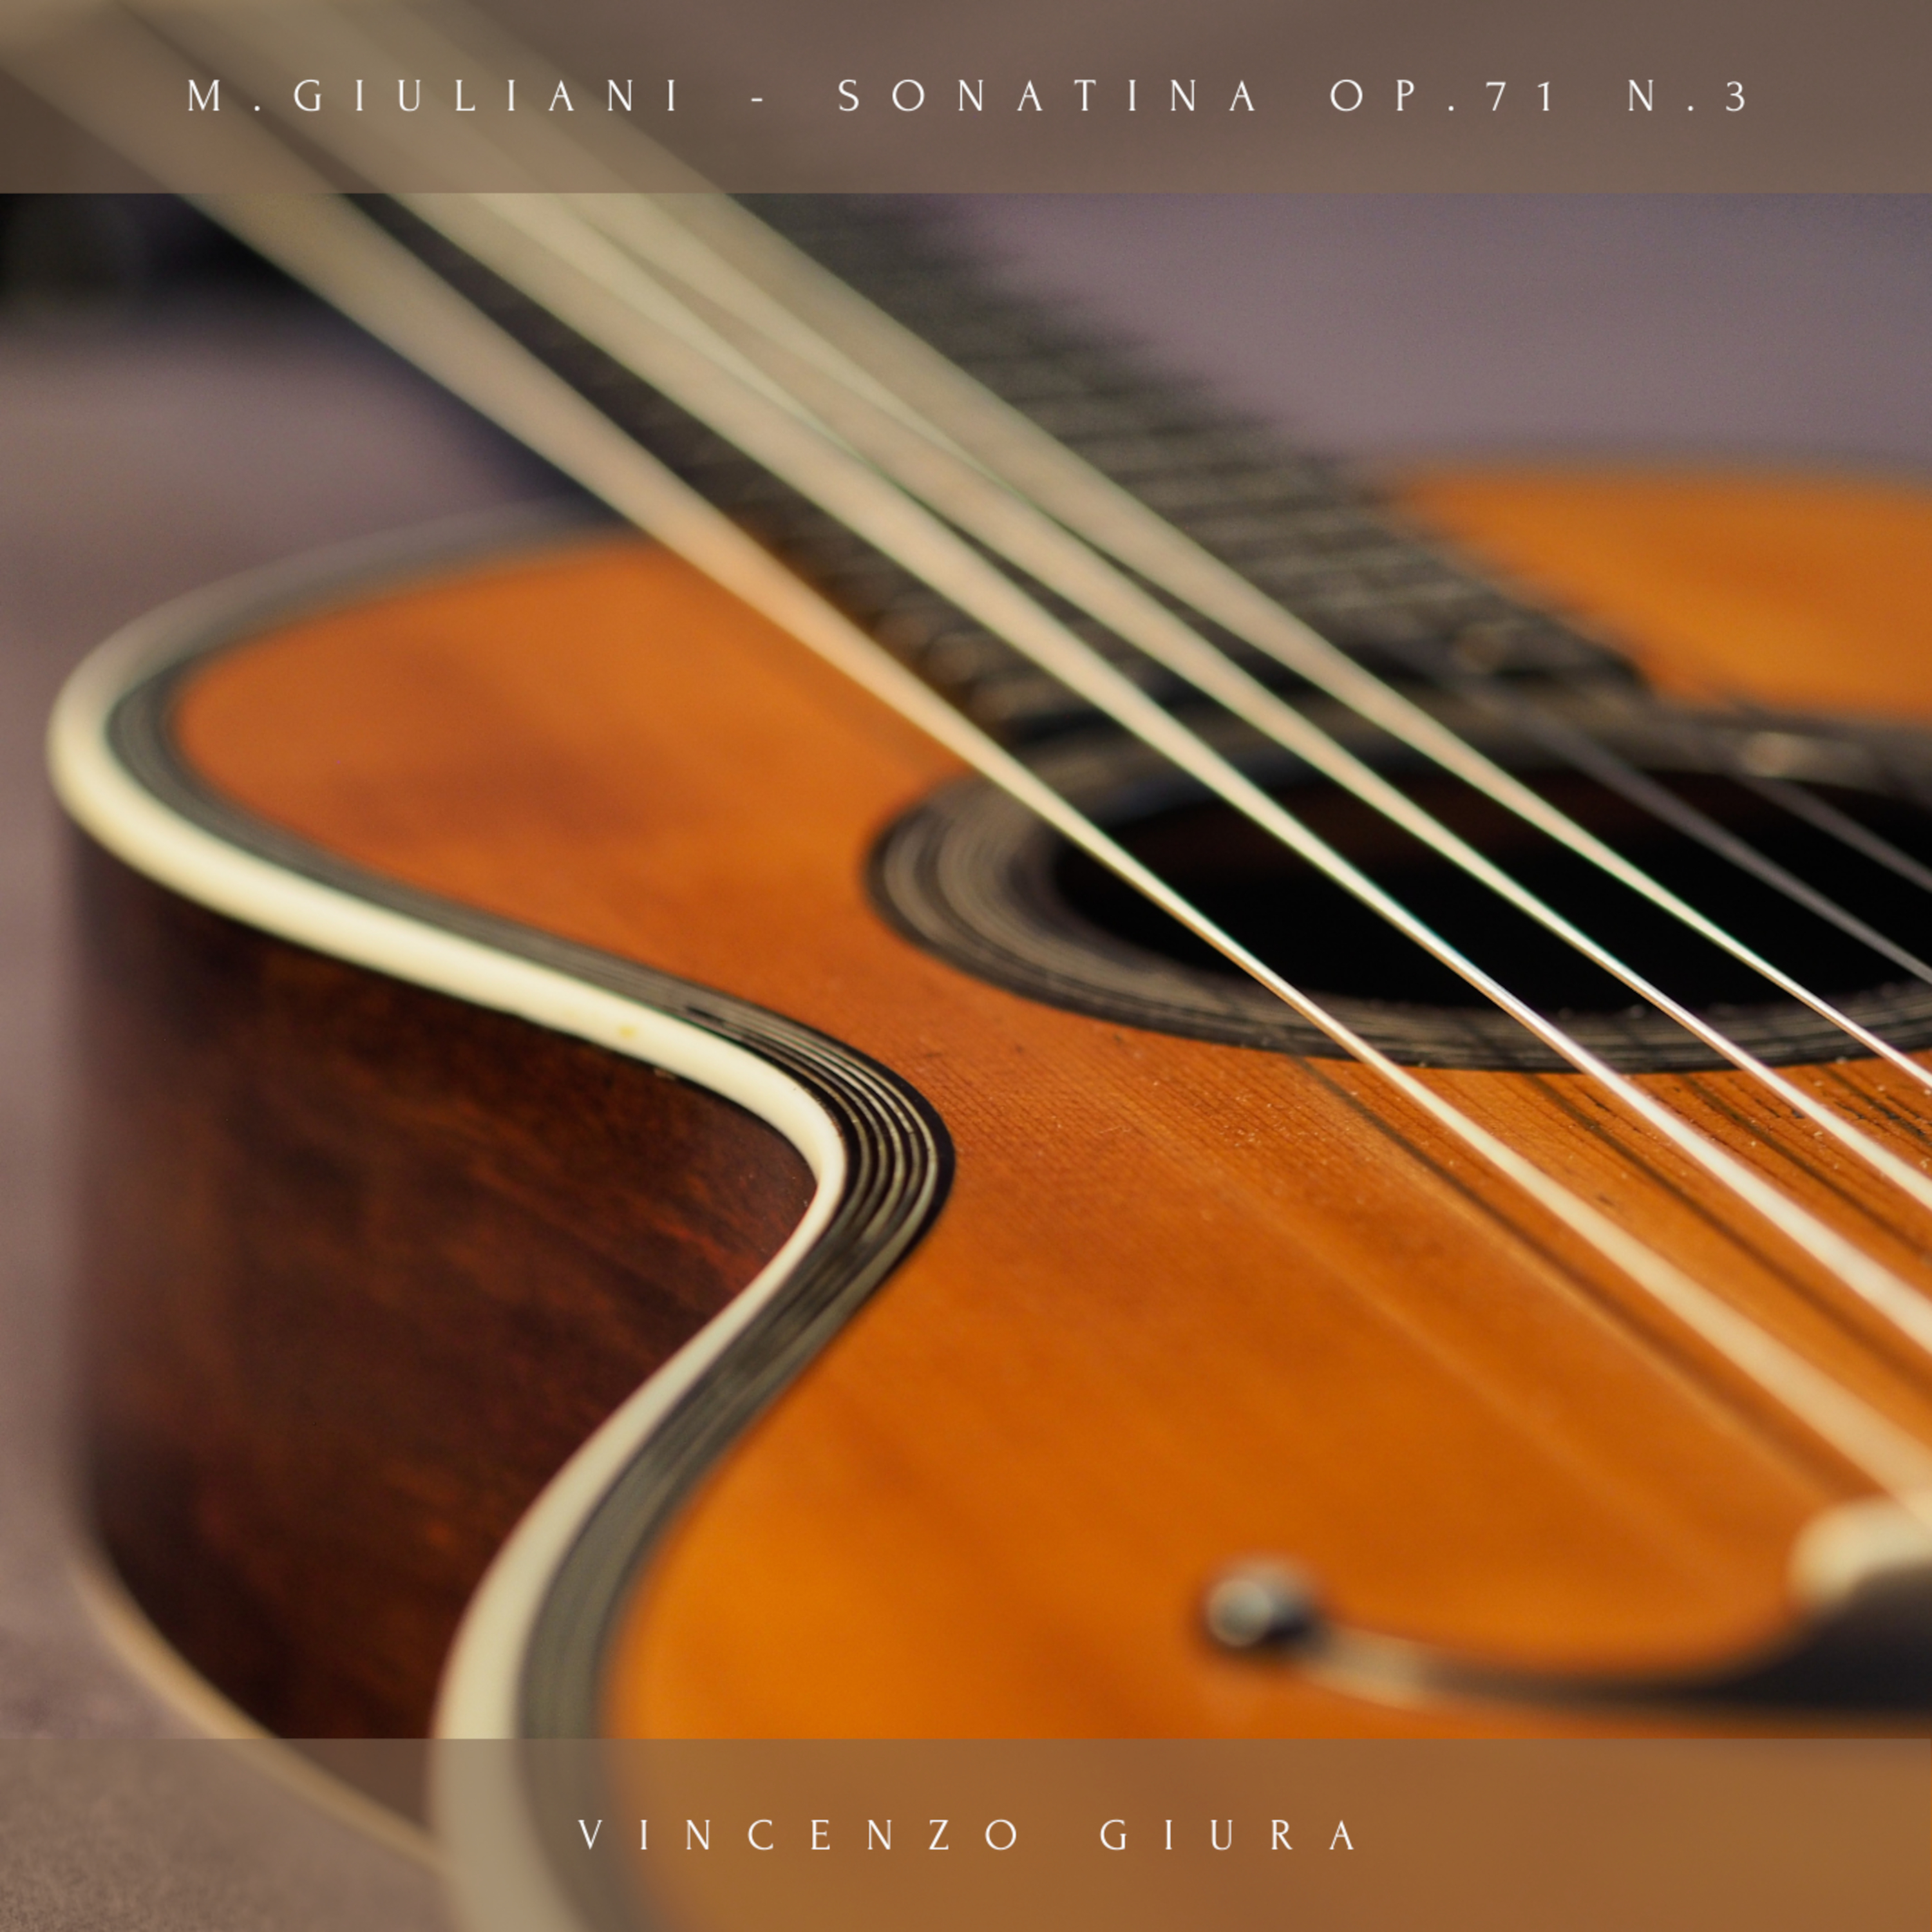 Foto 1 - In uscita il 18 febbraio l’album di esordio di Vincenzo Giura Sonatina Op. 71 N. 3 M. Giuliani